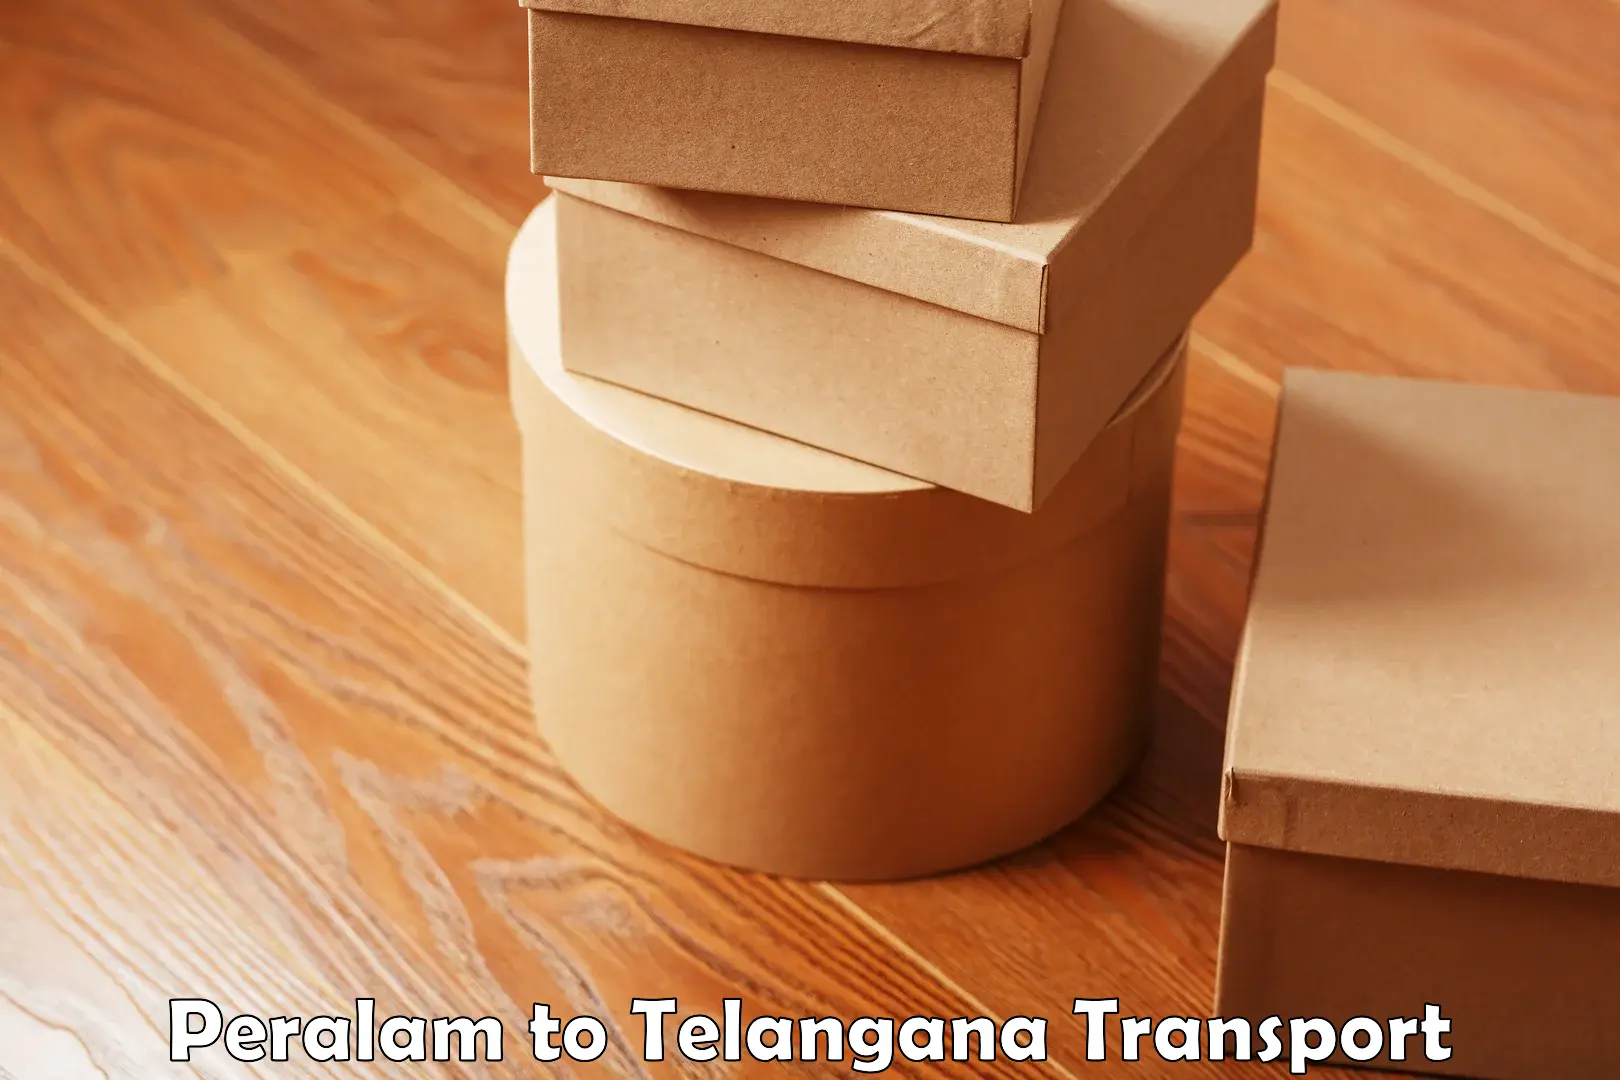 Truck transport companies in India Peralam to Telangana